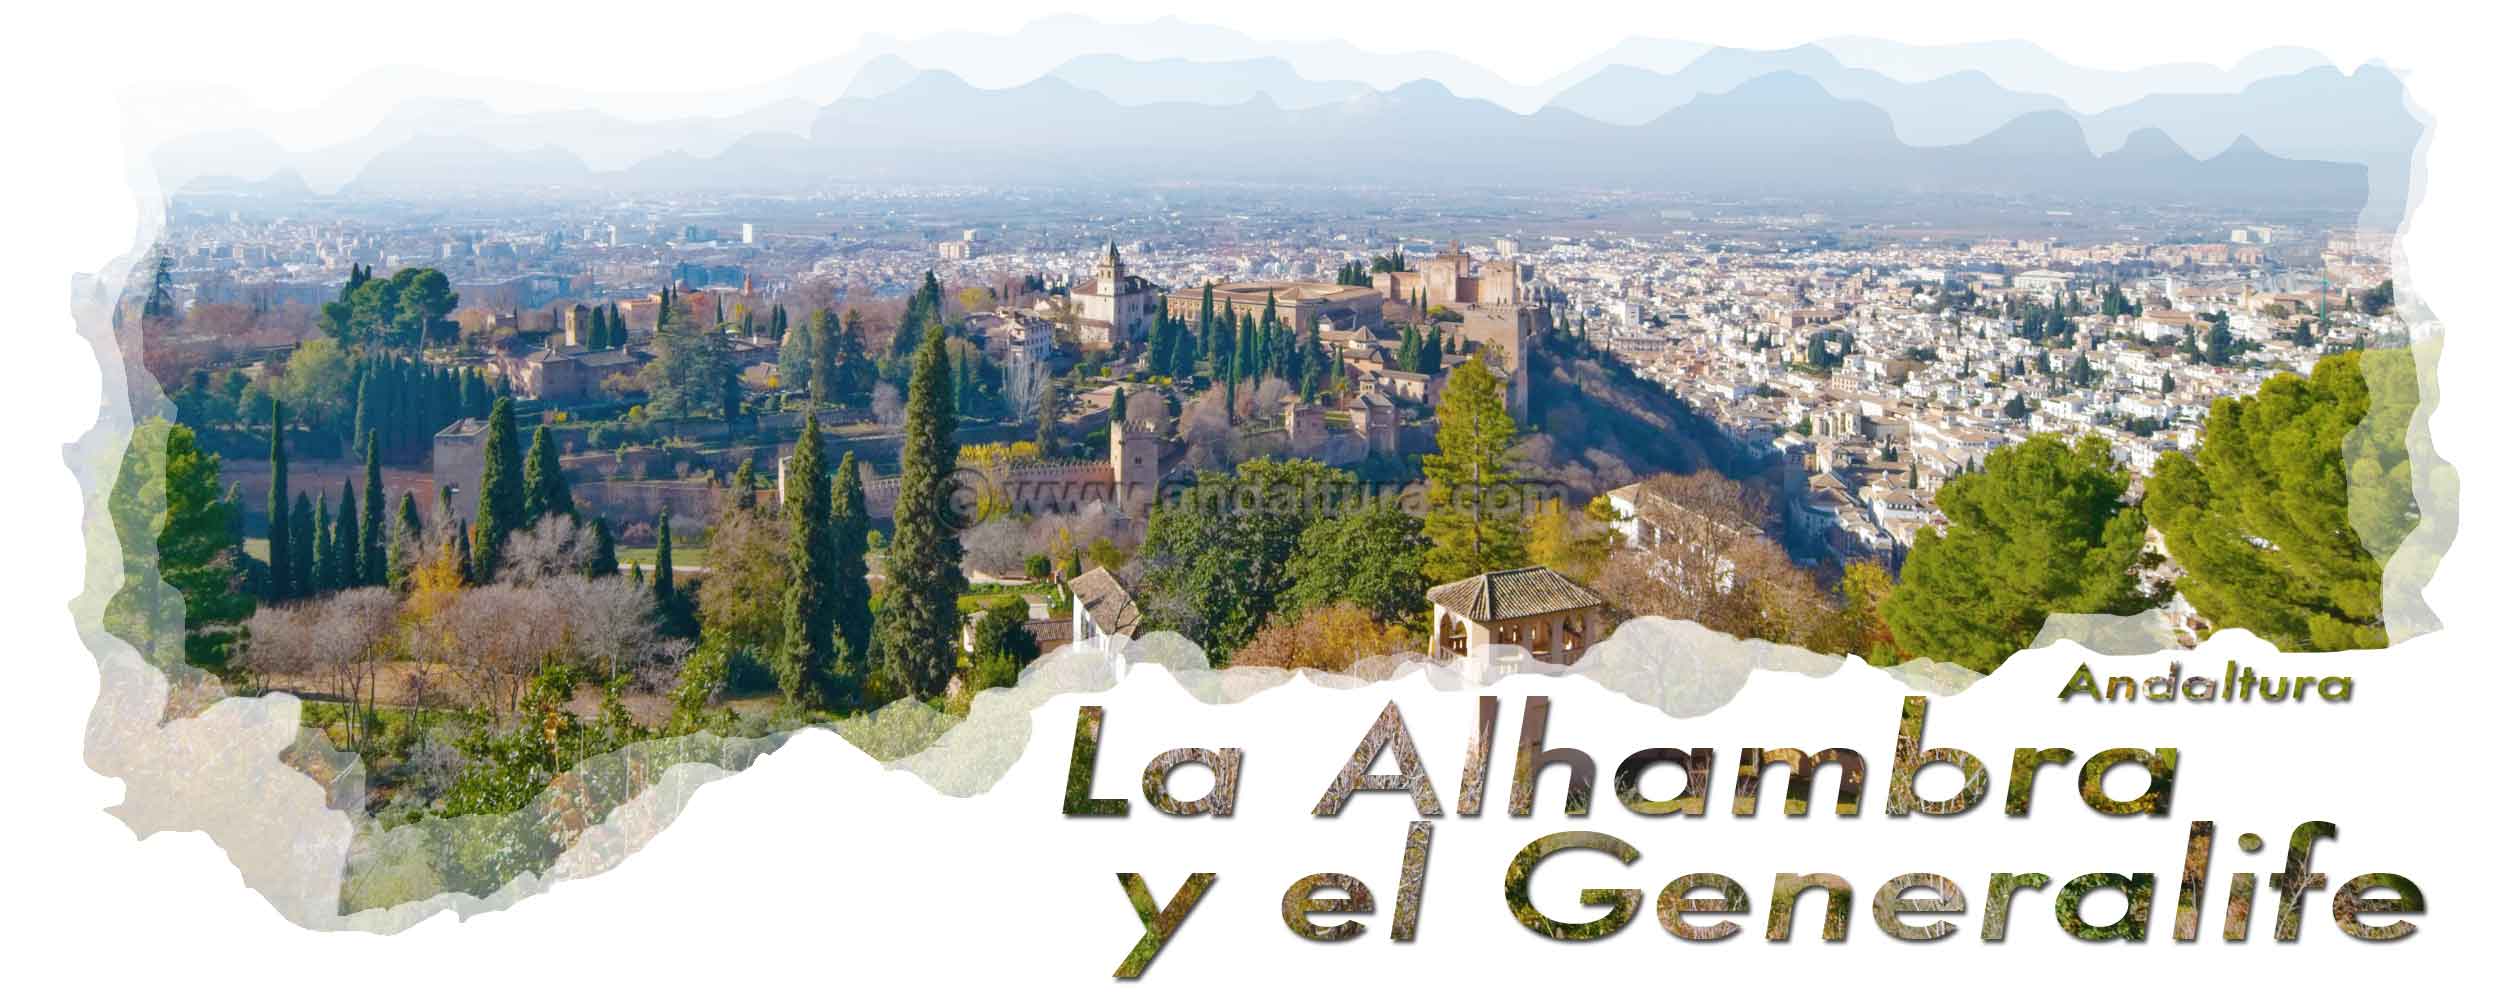 Granada y la Alhambra desde la Silla del Moro - Cabecera Postigos de la Alhambra